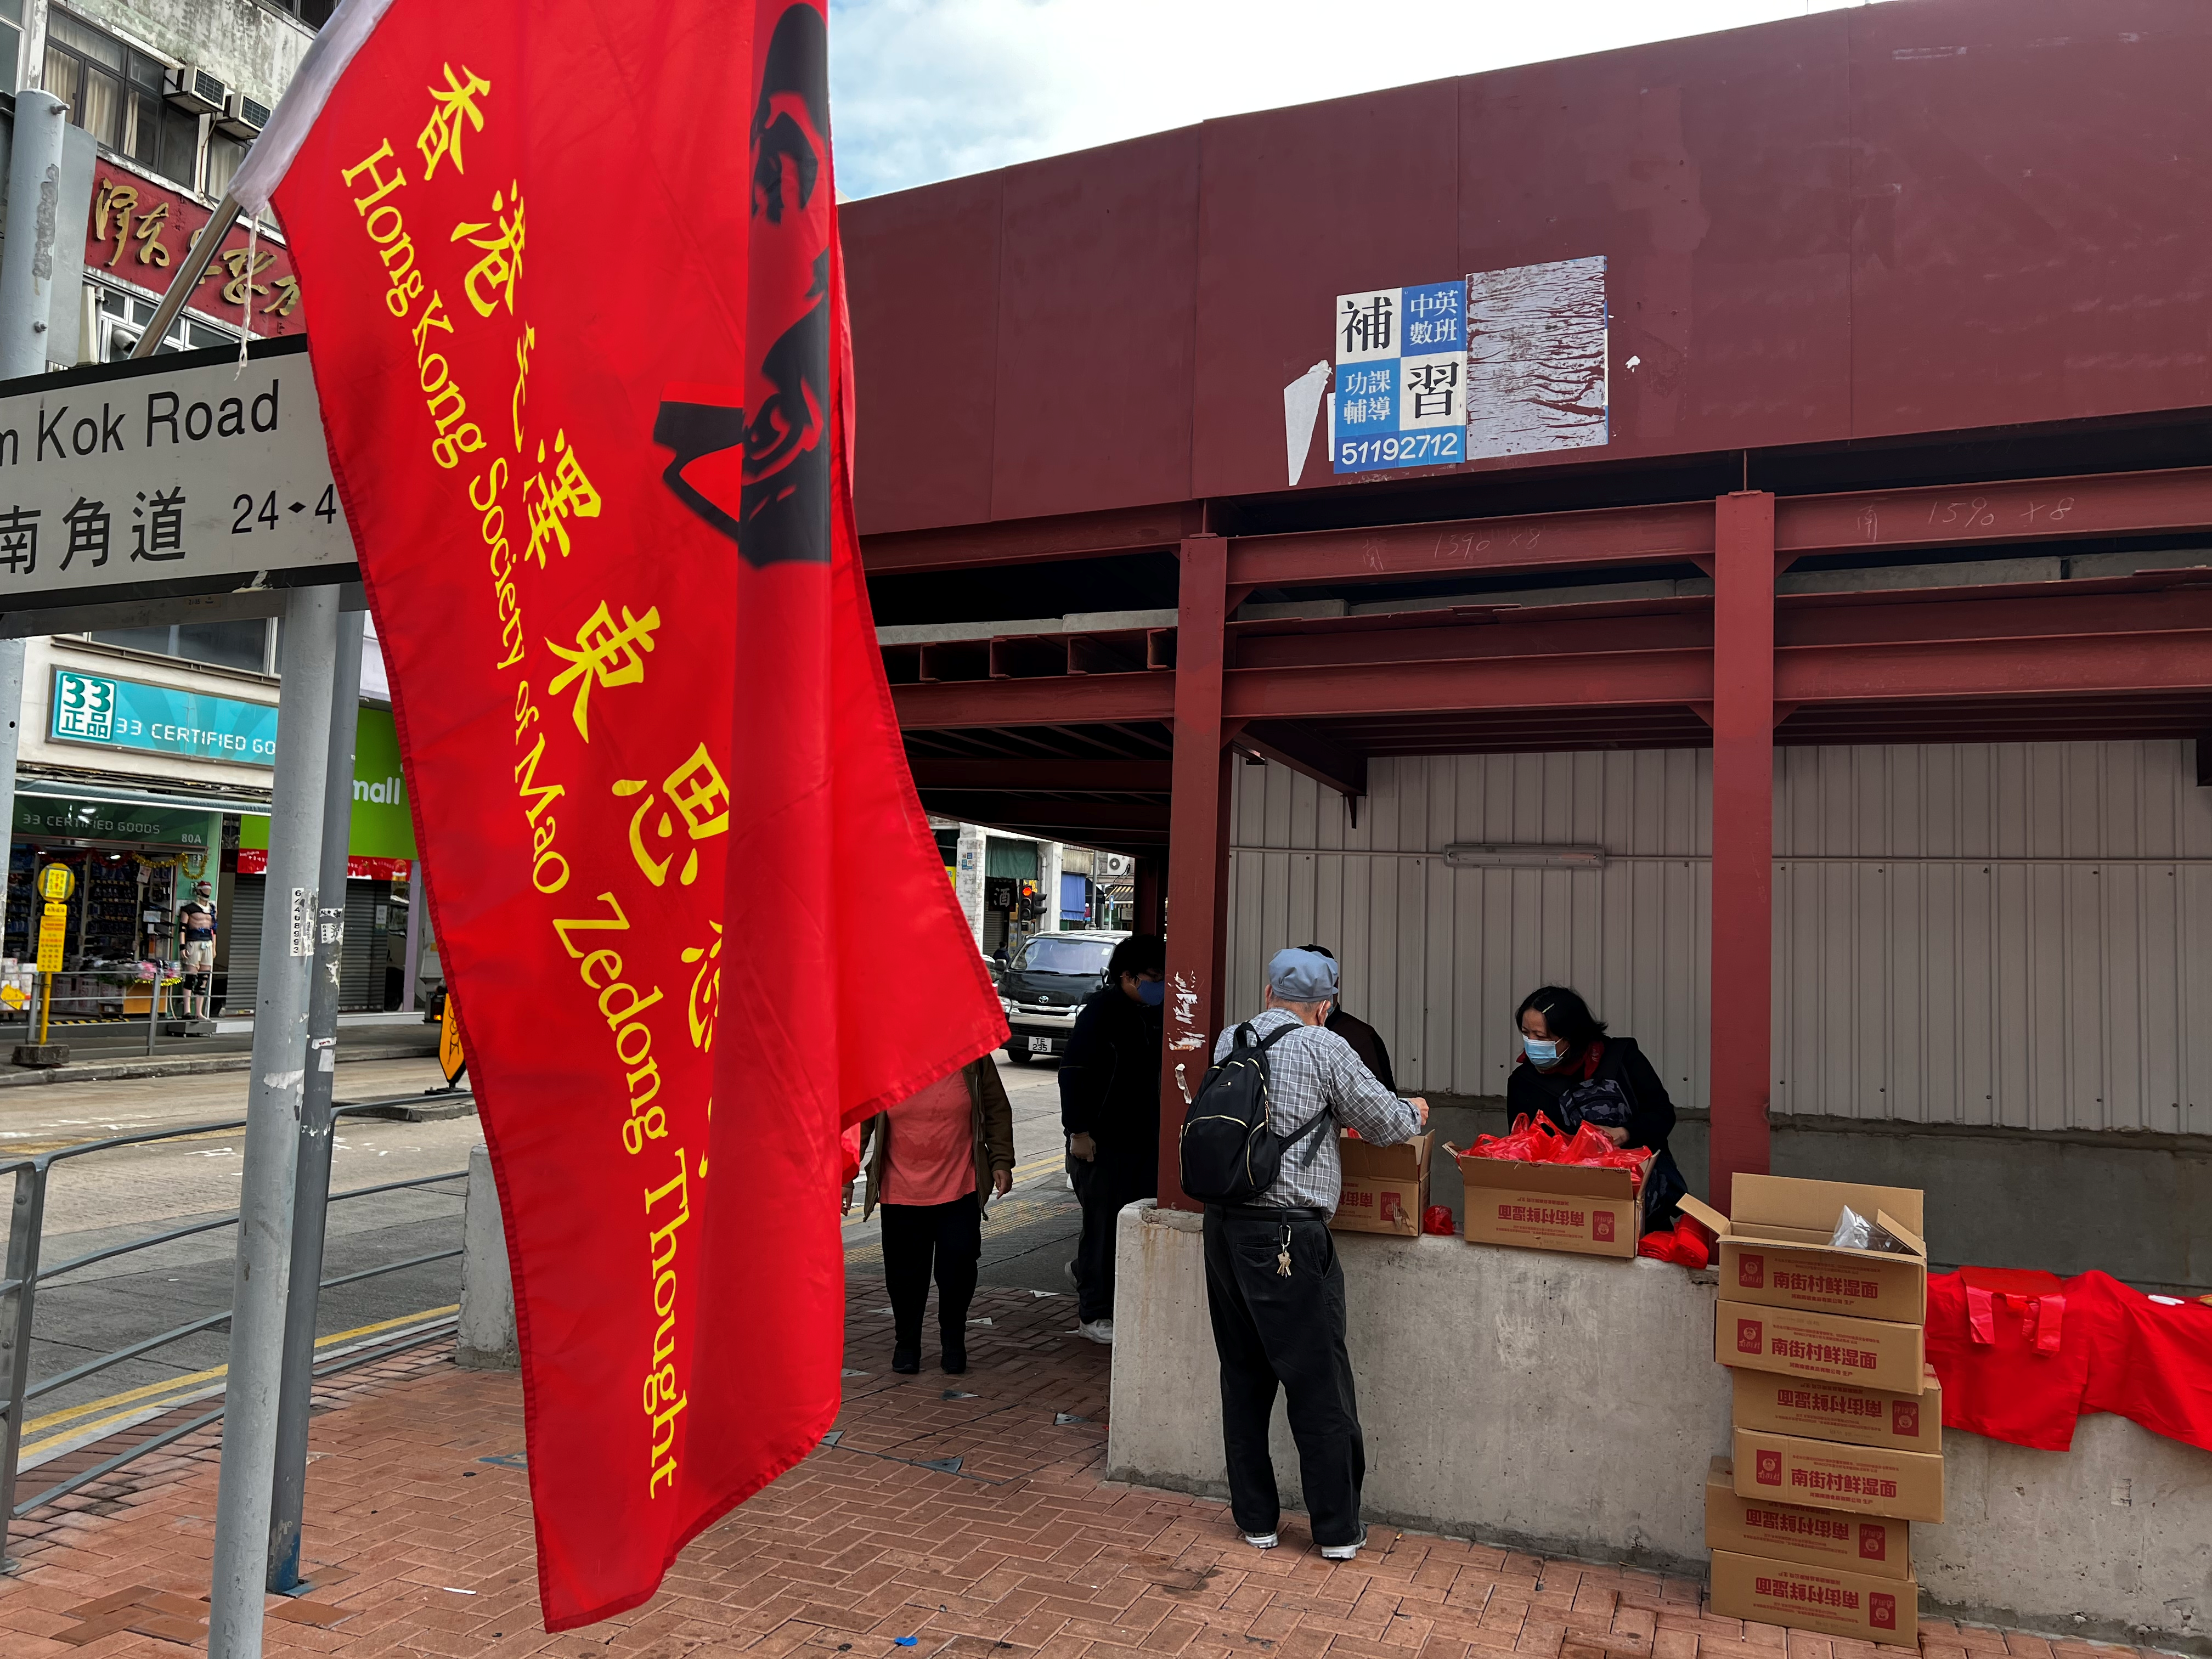 永远坚持那一抹红色！林敏捷老人多年来自掏腰包在香港宣传毛主席